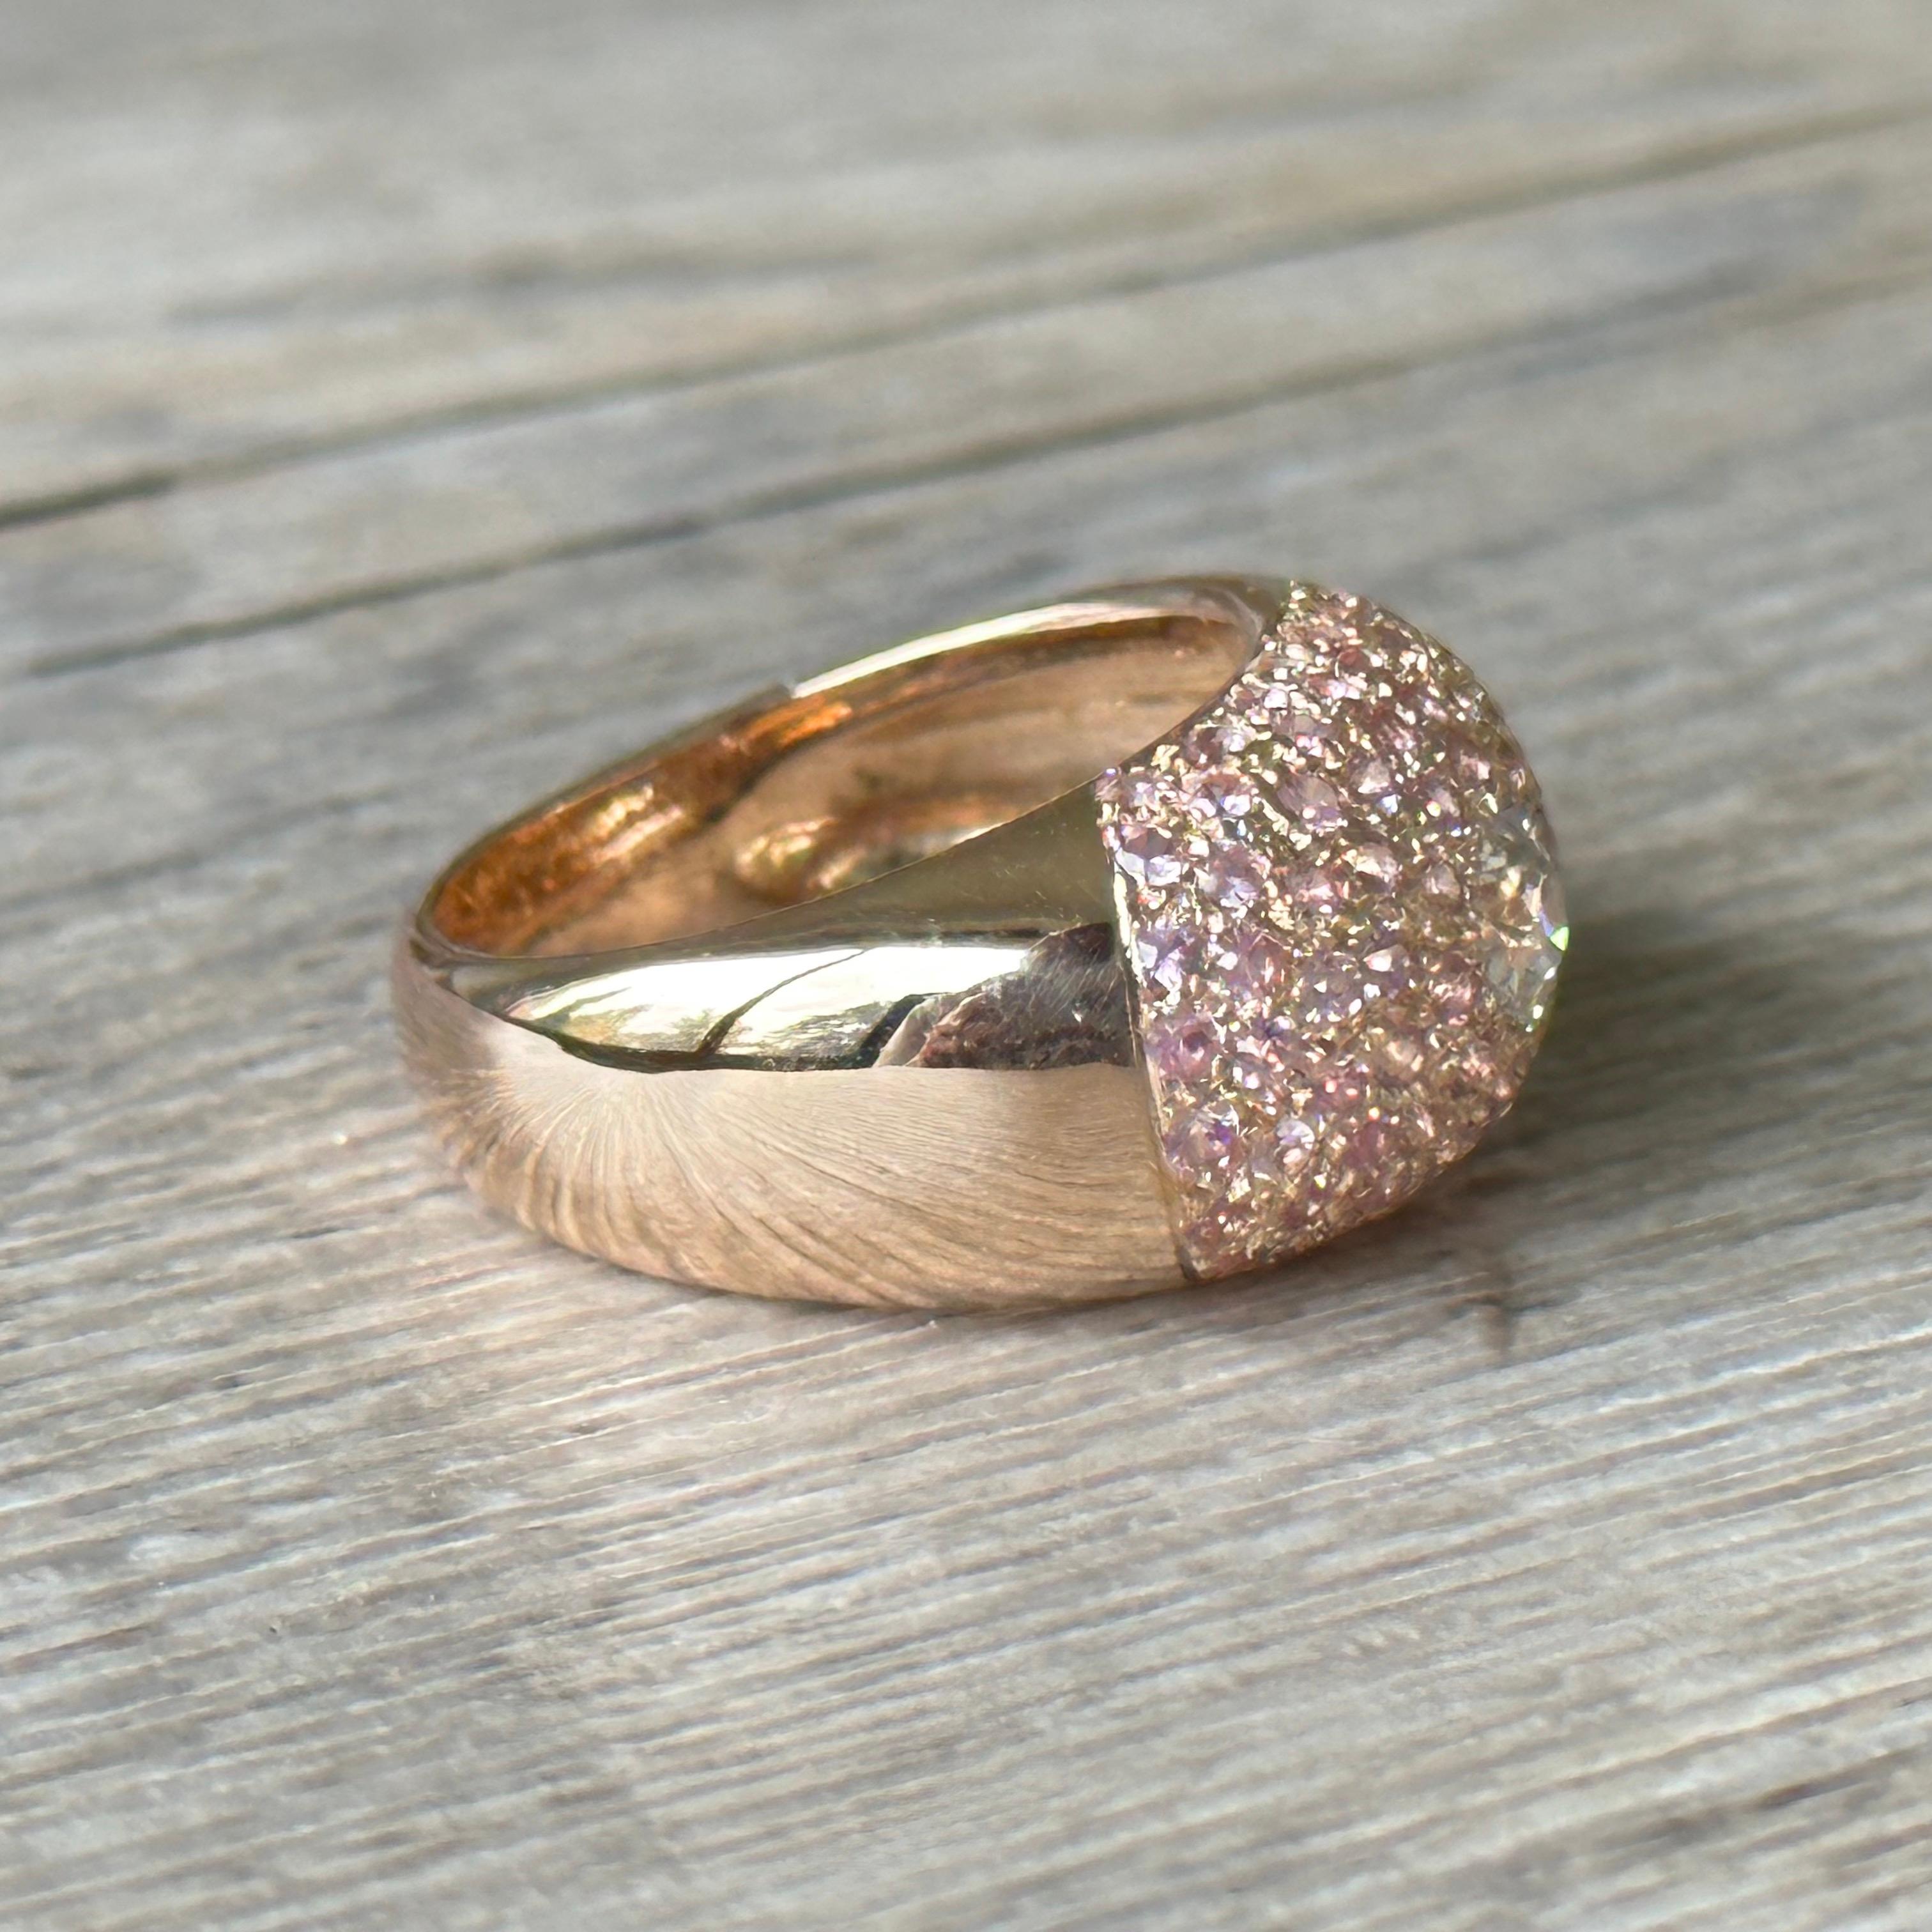 Découvrez cette magnifique bague dôme saphirs roses diamant en or 18 carats, un bijou d'exception qui saura captiver tous les regards. Fabriquée avec de l'or 750 millièmes, cette bague est d'une qualité irréprochable.

Le point central de cette